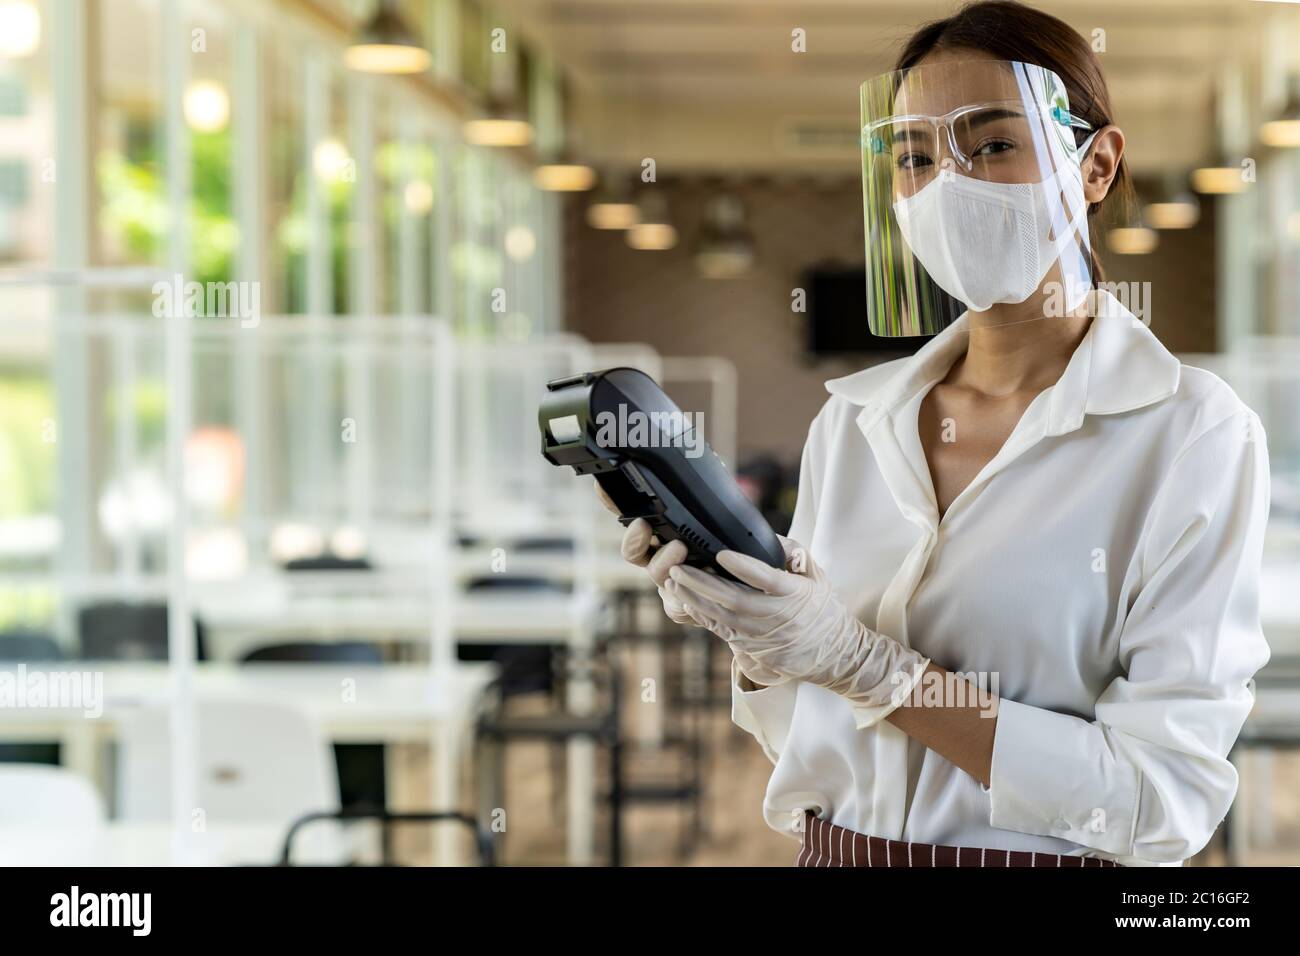 Portrait Attraktive asiatische Kellnerin tragen Gesichtsmaske und Gesichtsschutz halten Kreditkartenleser für kontaktlose Zahlung mit Restaurant innen Hintergrund. N Stockfoto